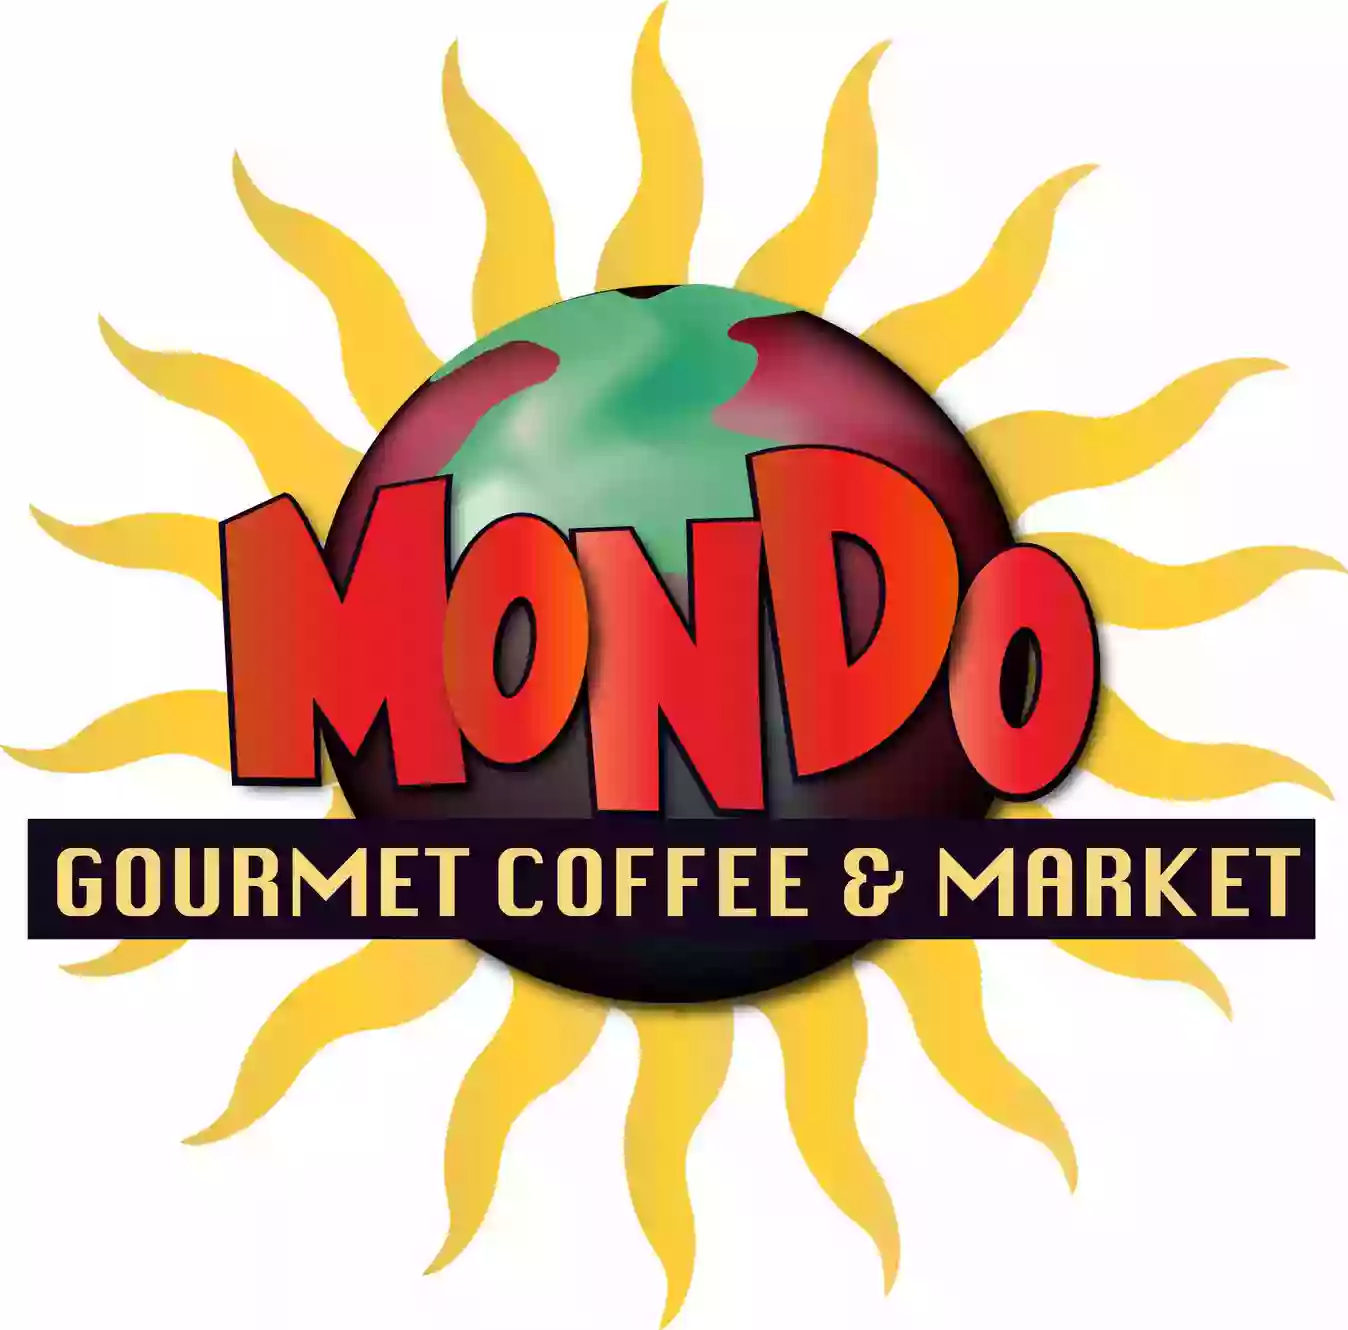 Mondo Cafe